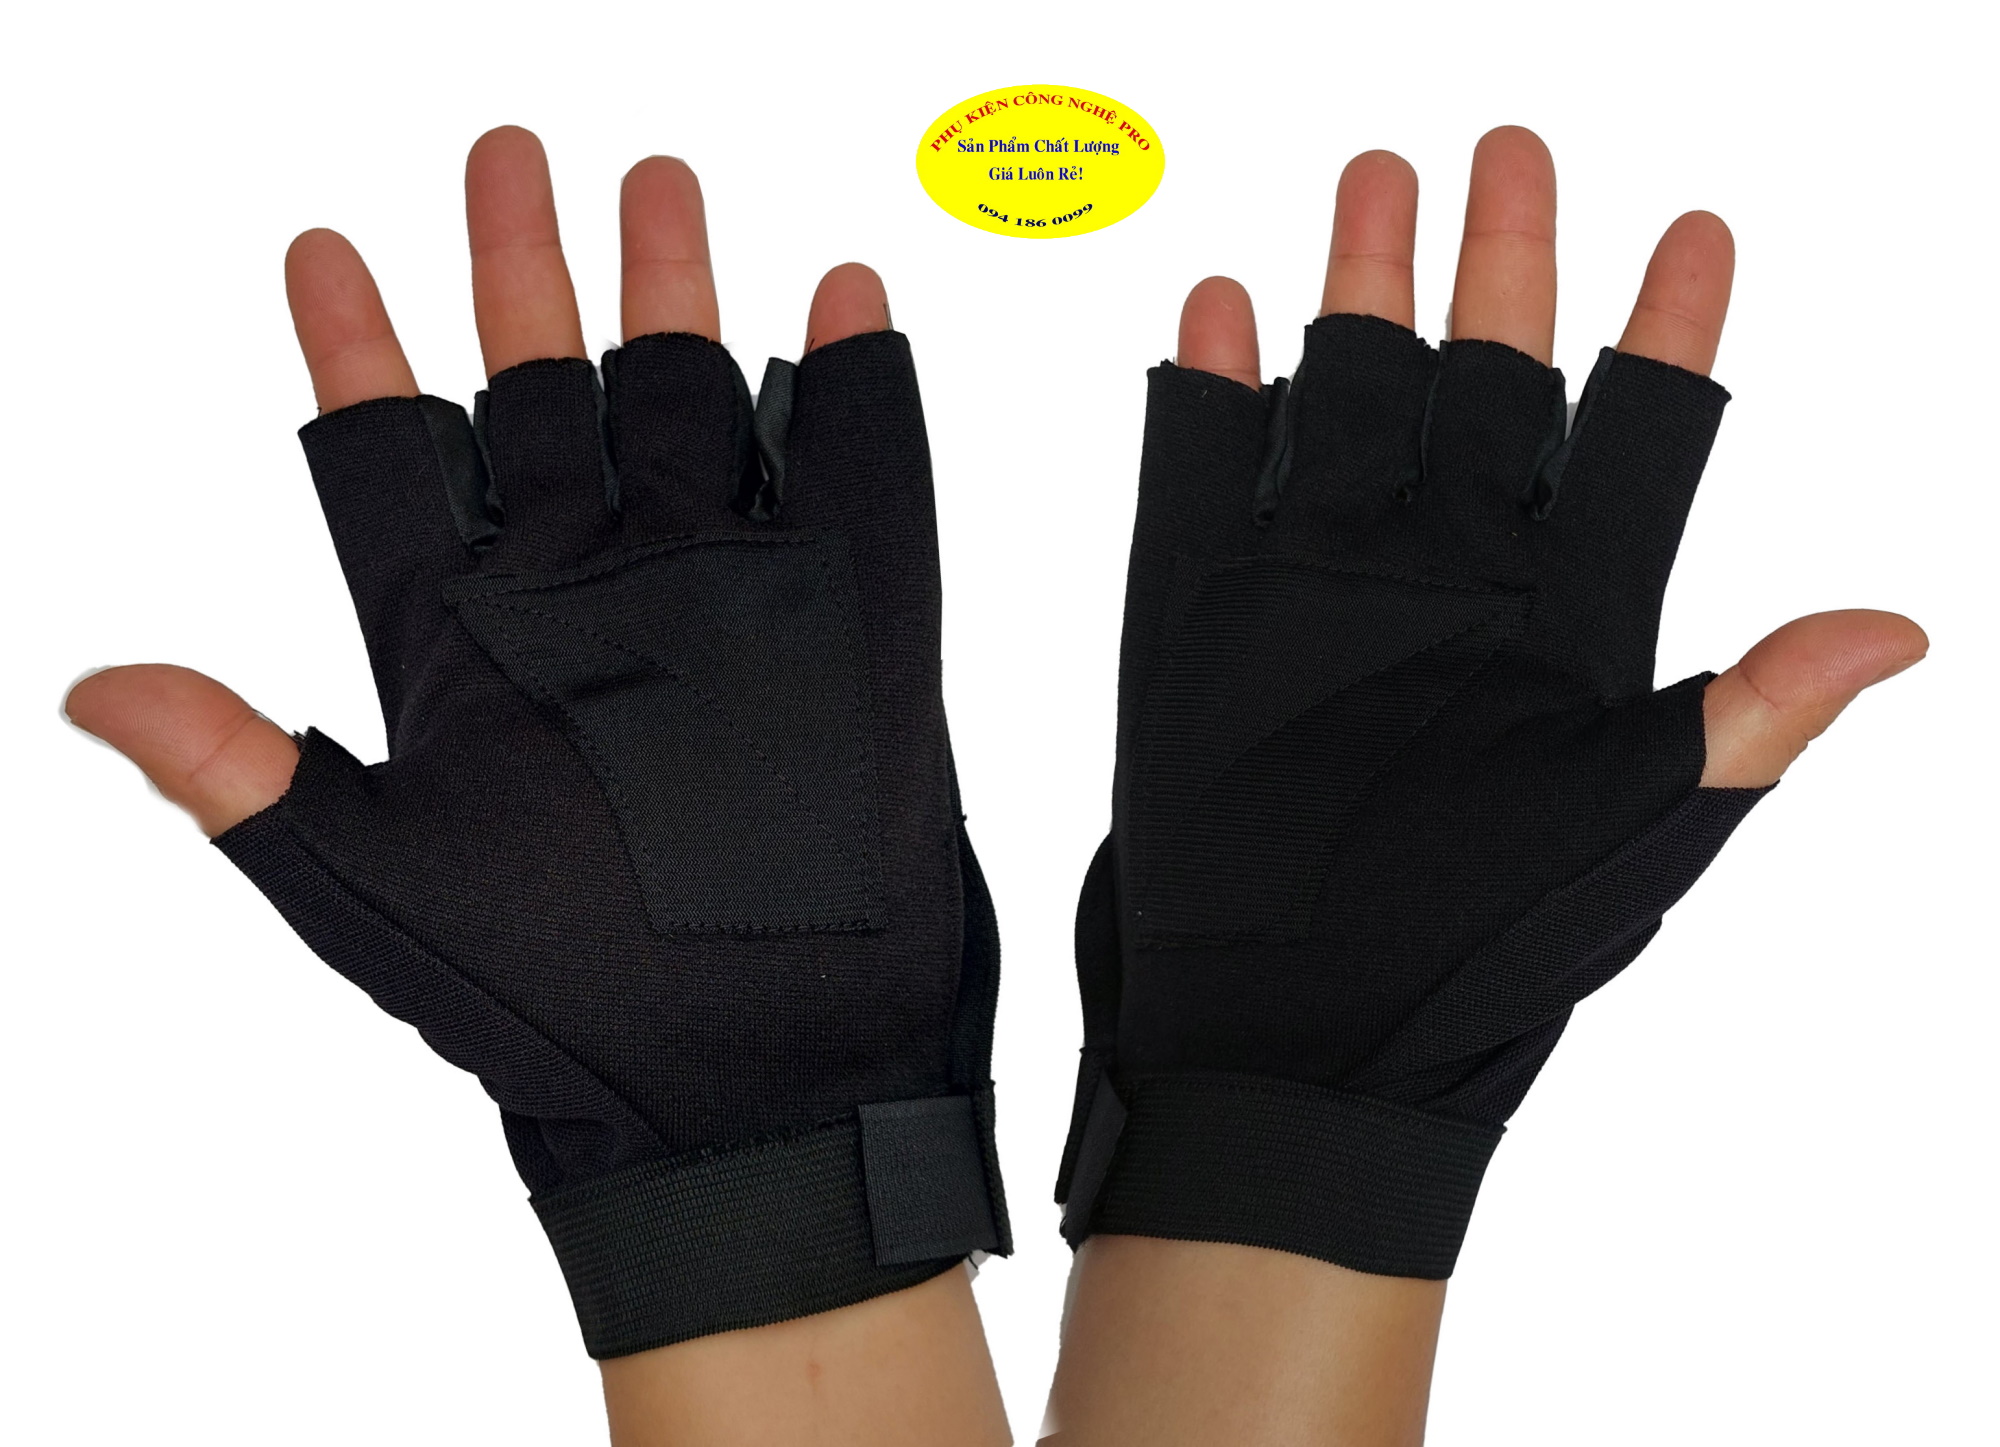 Găng tay nam chống nắng Hở 5 ngón Amaha Tường vy Gắn Logo bất kỳ Chất liệu vải dày, màu đen, mềm, êm, bảo vệ đôi tay